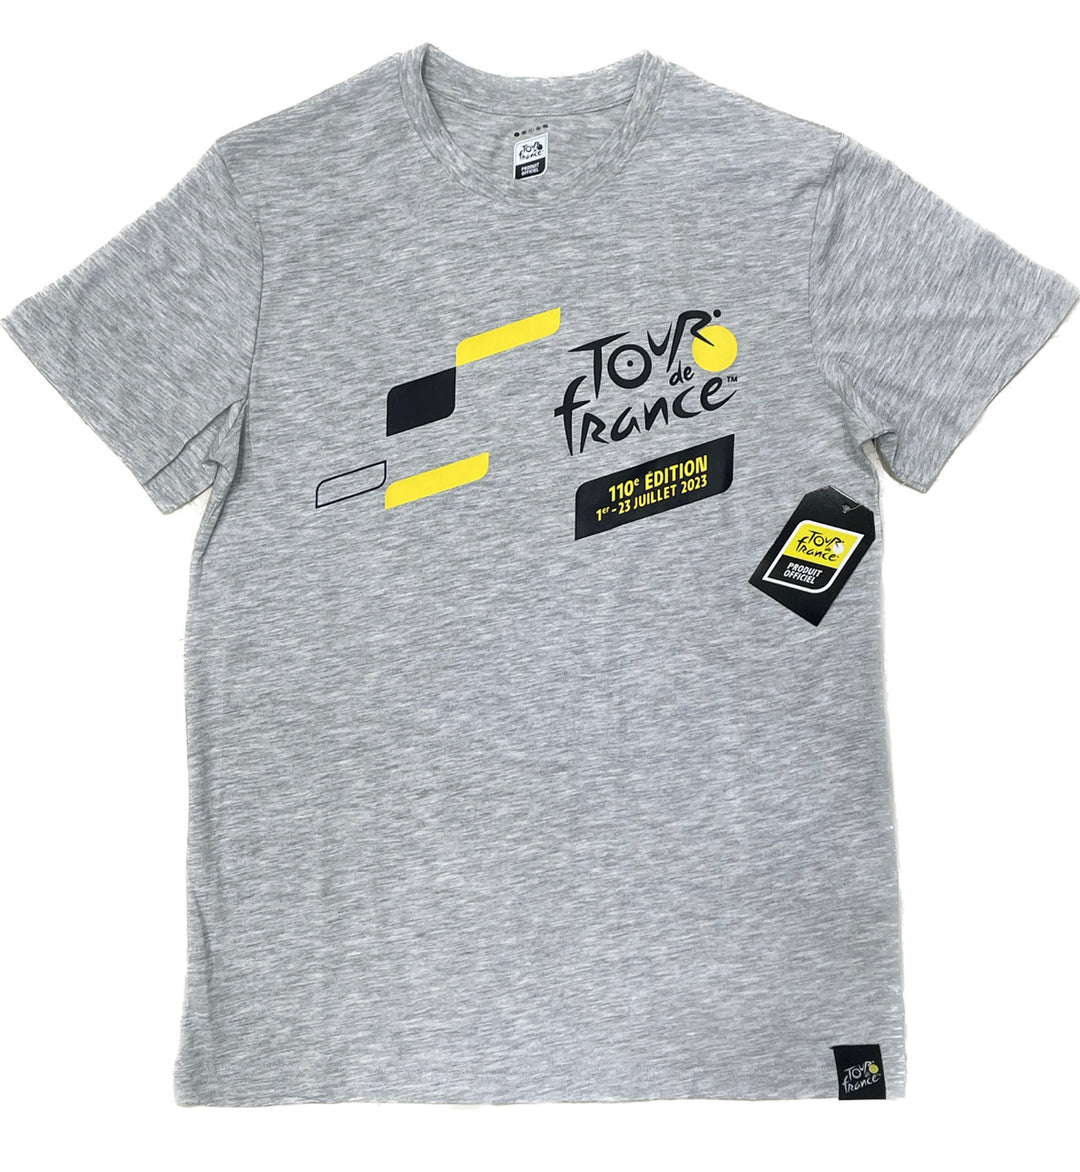 Camiseta mapa Tour de Francia colección 2023